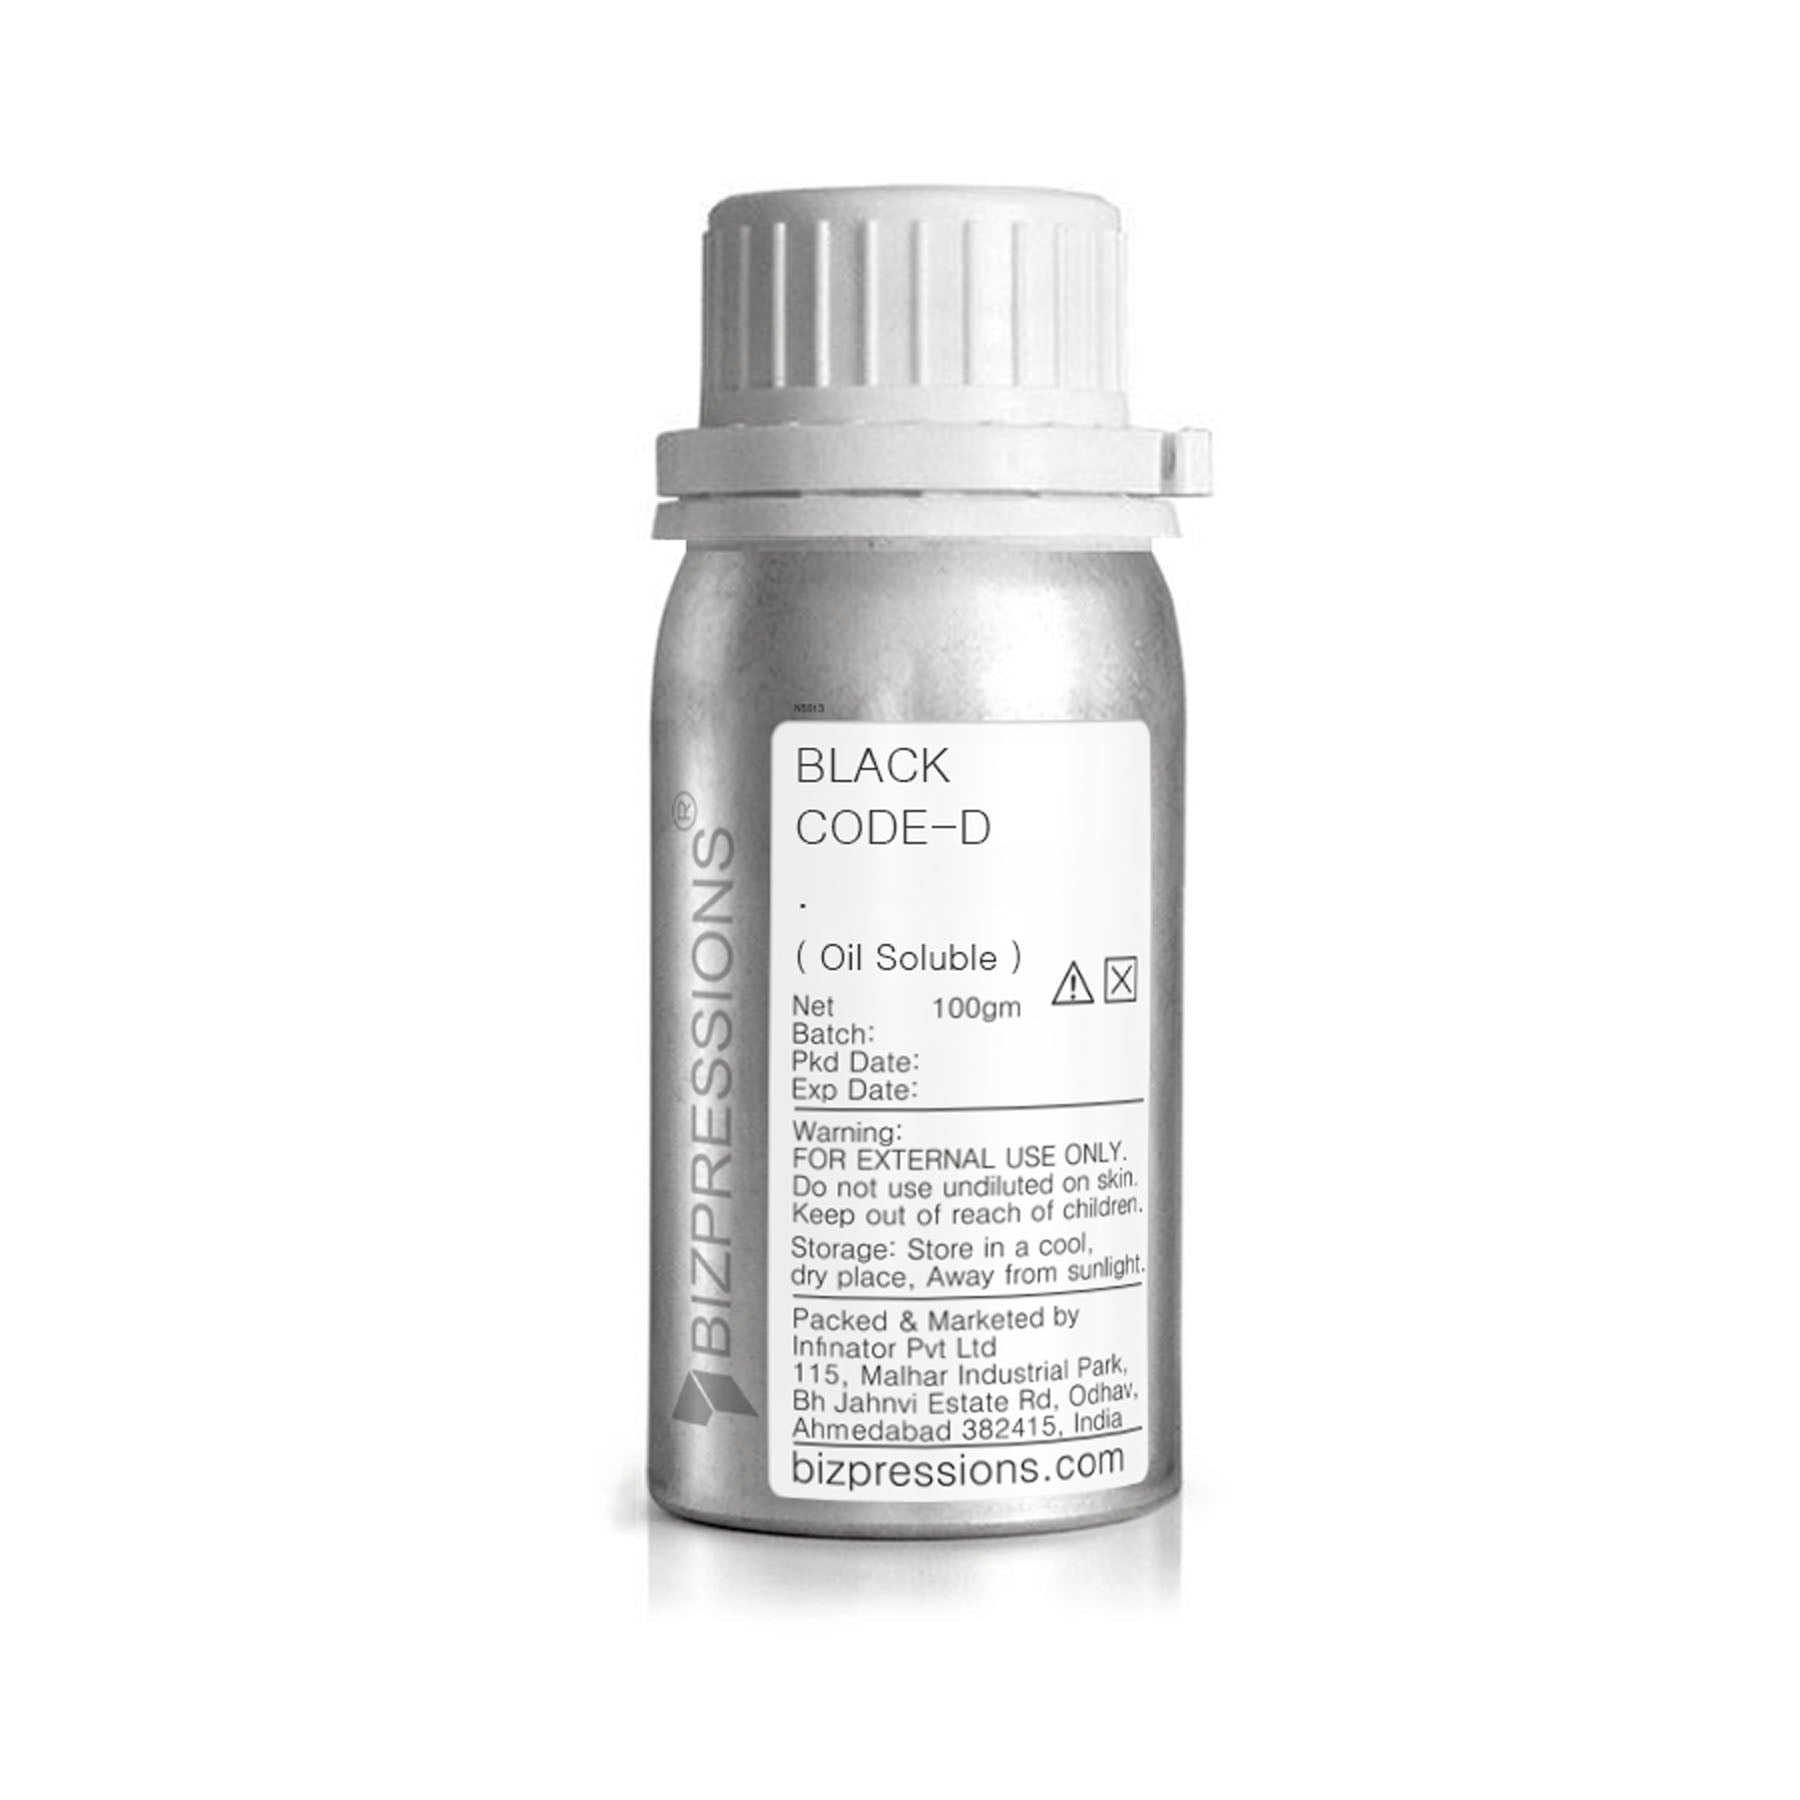 BLACK CODE-D - Fragrance ( Oil Soluble ) - 100 gm